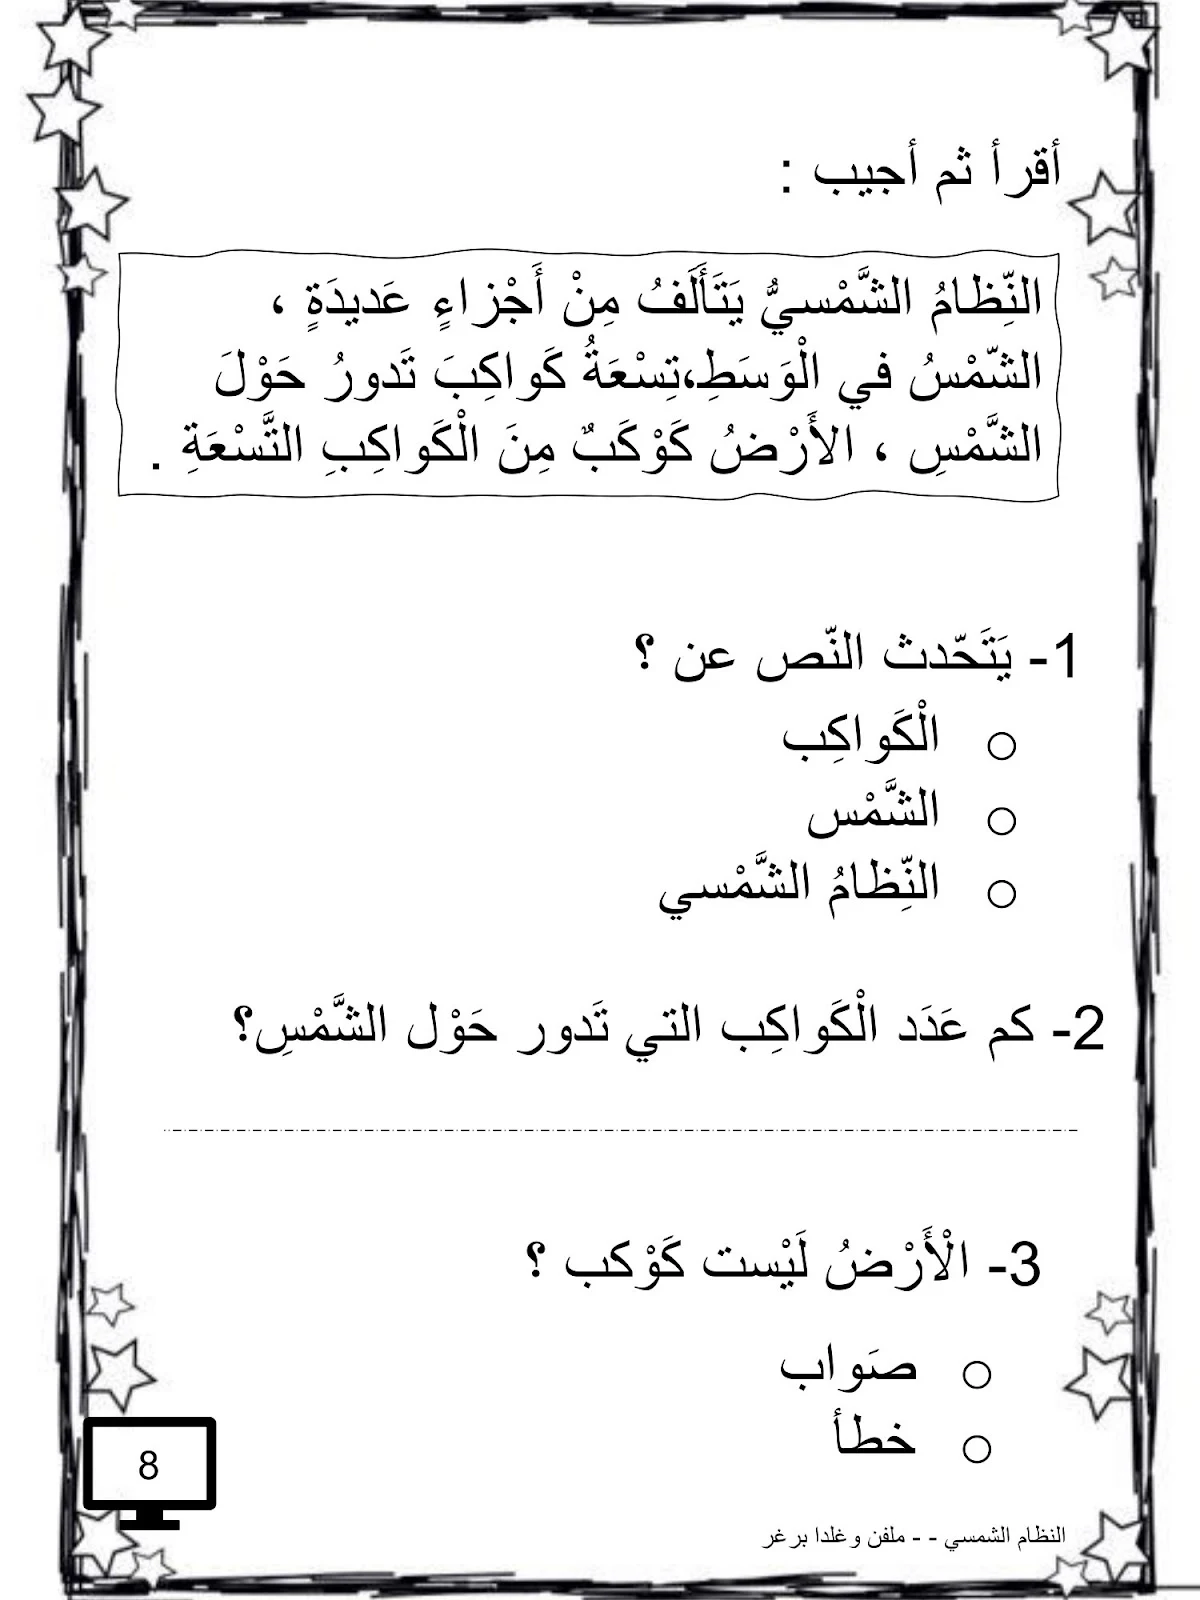 ملزمة المثقف الصغير للغة العربية للصف الاول pdf تحميل مباشر